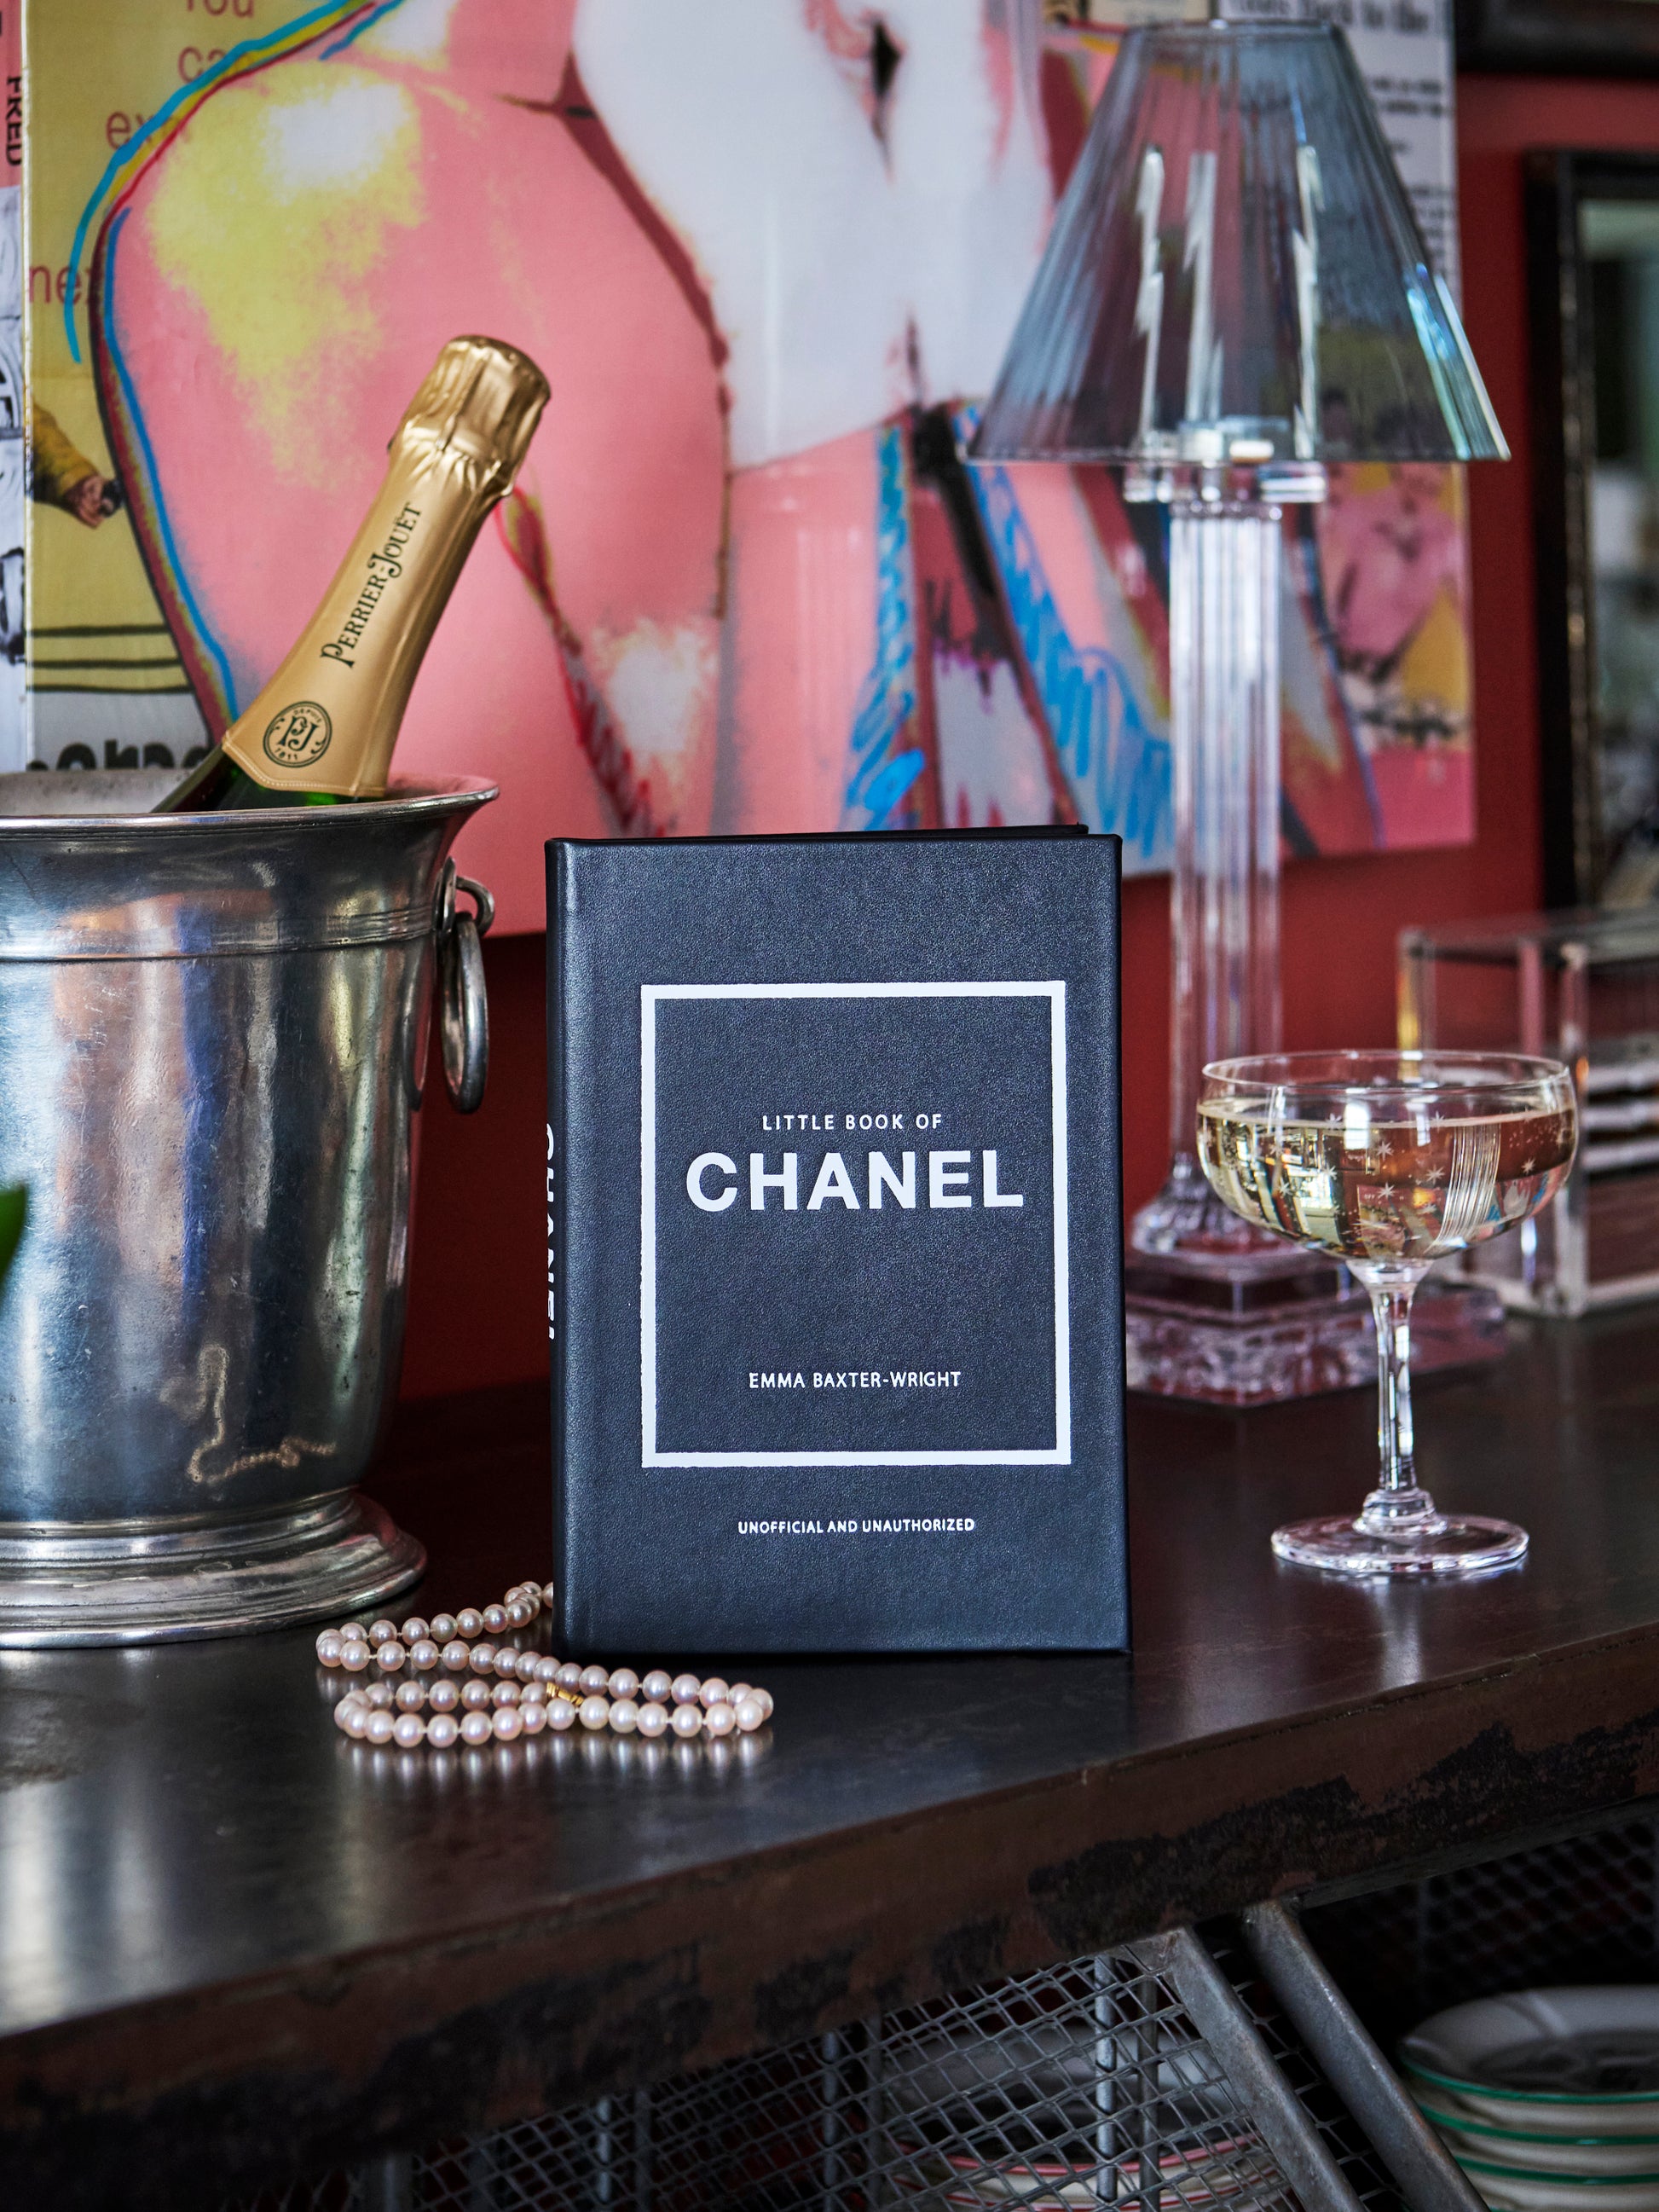 Fashion  Chanel book decor, Chanel book, Coco chanel books